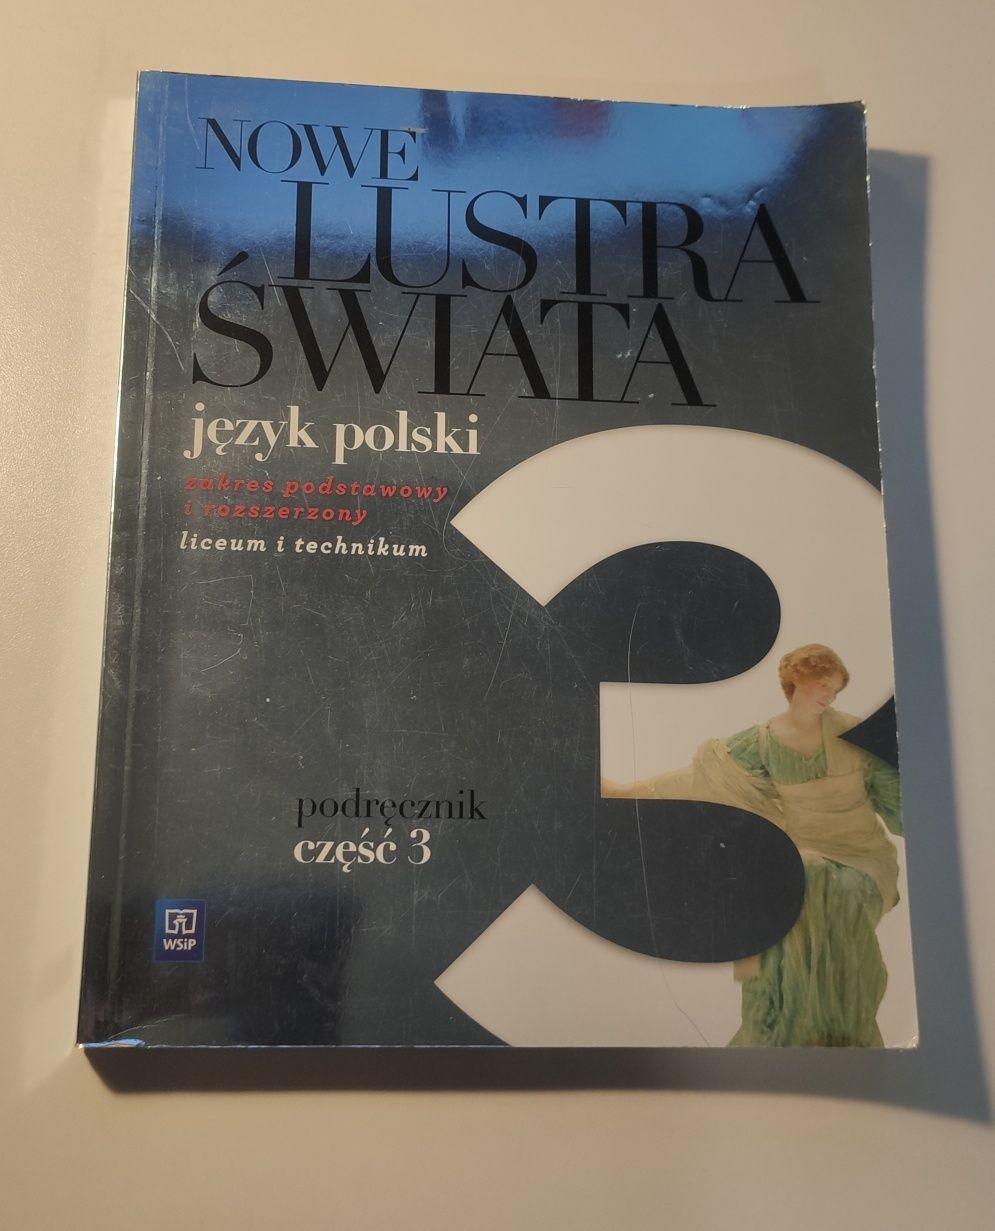 Podręcznik do języka polskiego "Nowe Lustra Świata cz.3" WSIP